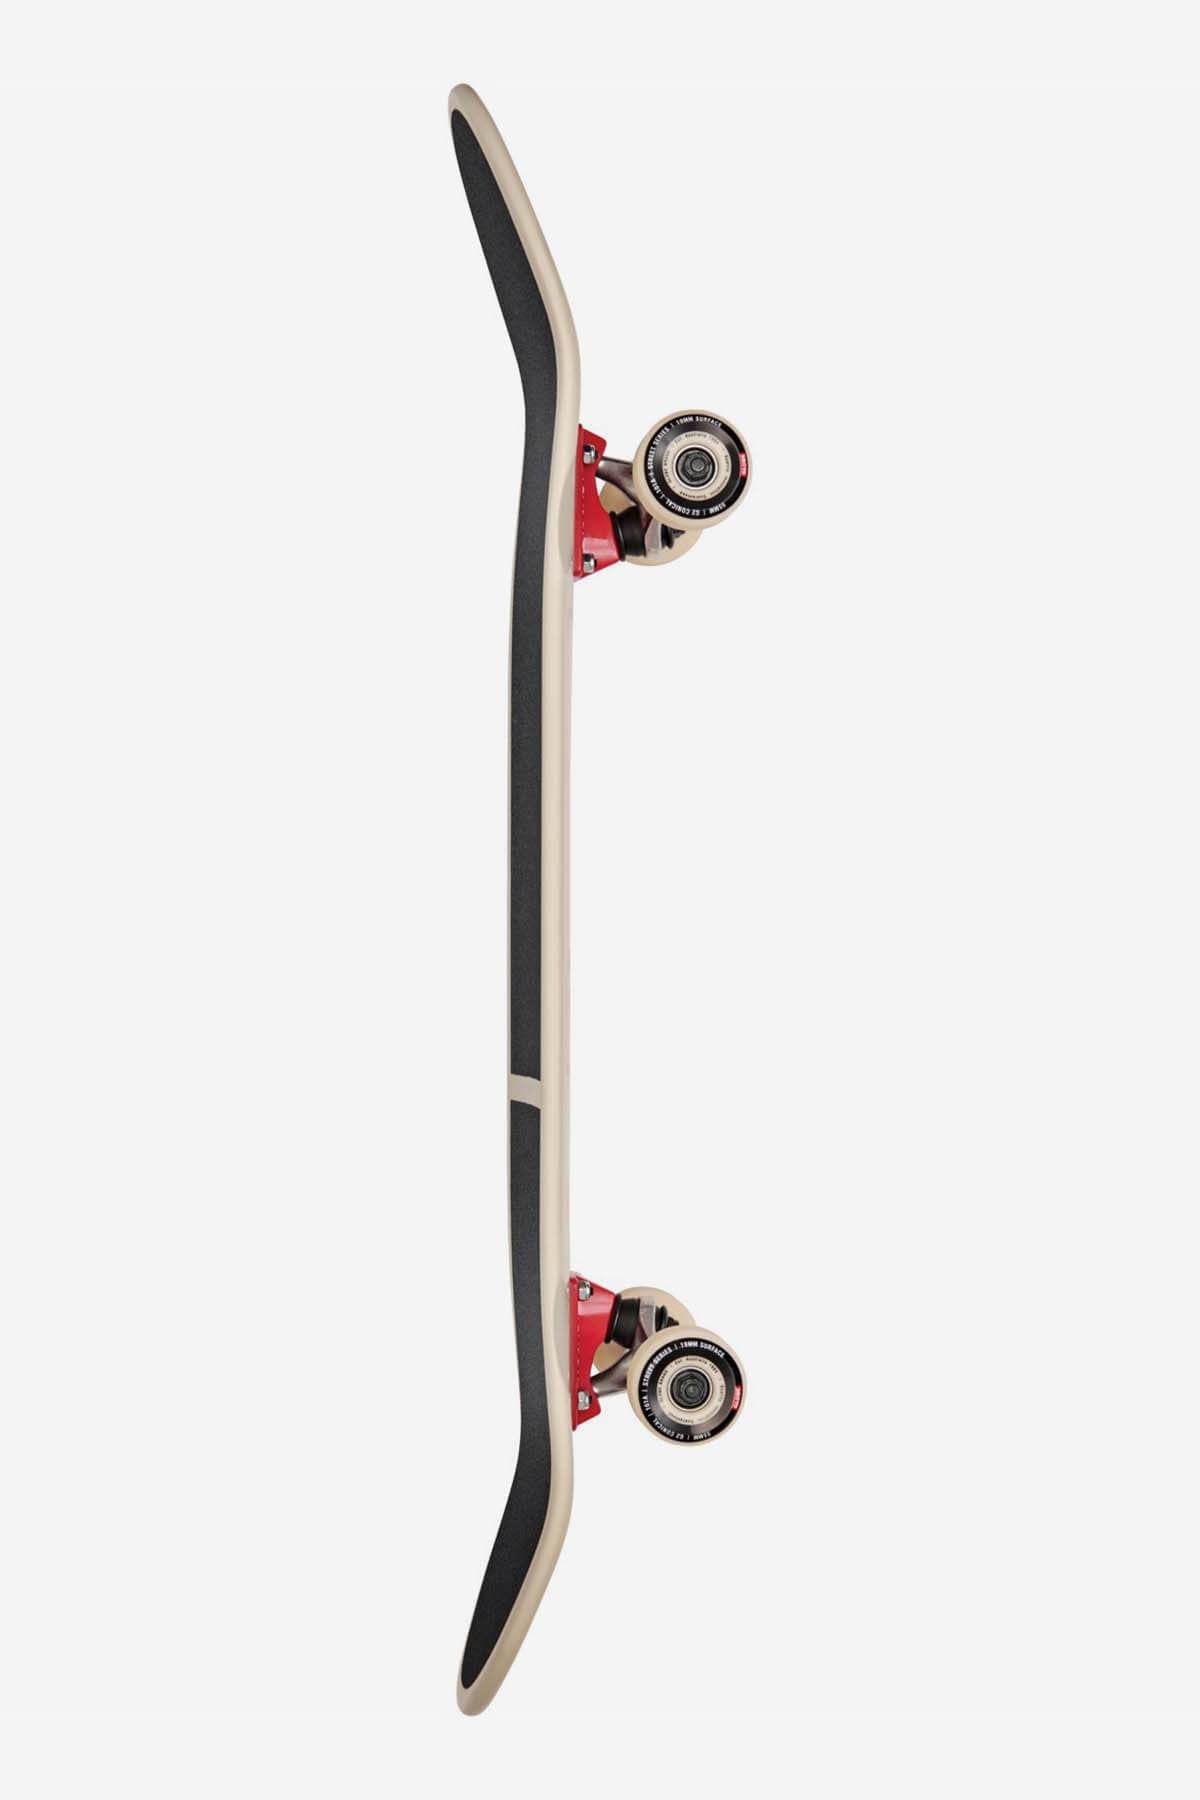 Globe Skateboard komplettiert Eggy - 8.625" Komplett Skateboard in Off-White/The Lot